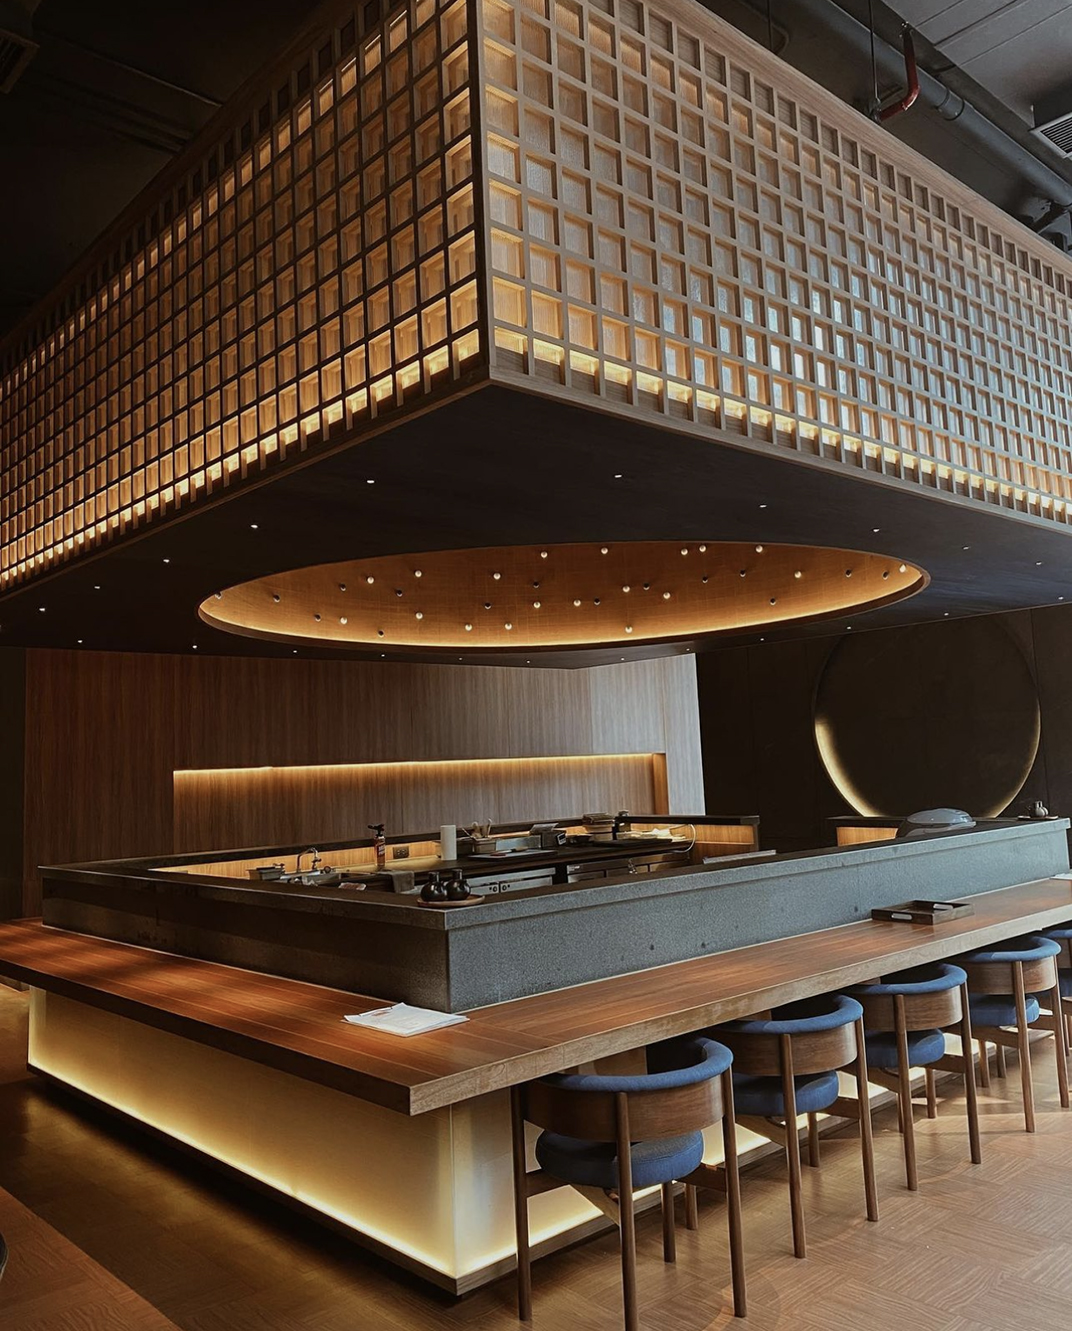 日式酒吧餐厅kinkibkk 泰国 曼谷 北京 上海 珠海 广州 武汉 杭州 佛山 香港 澳门 logo设计 vi设计 空间设计